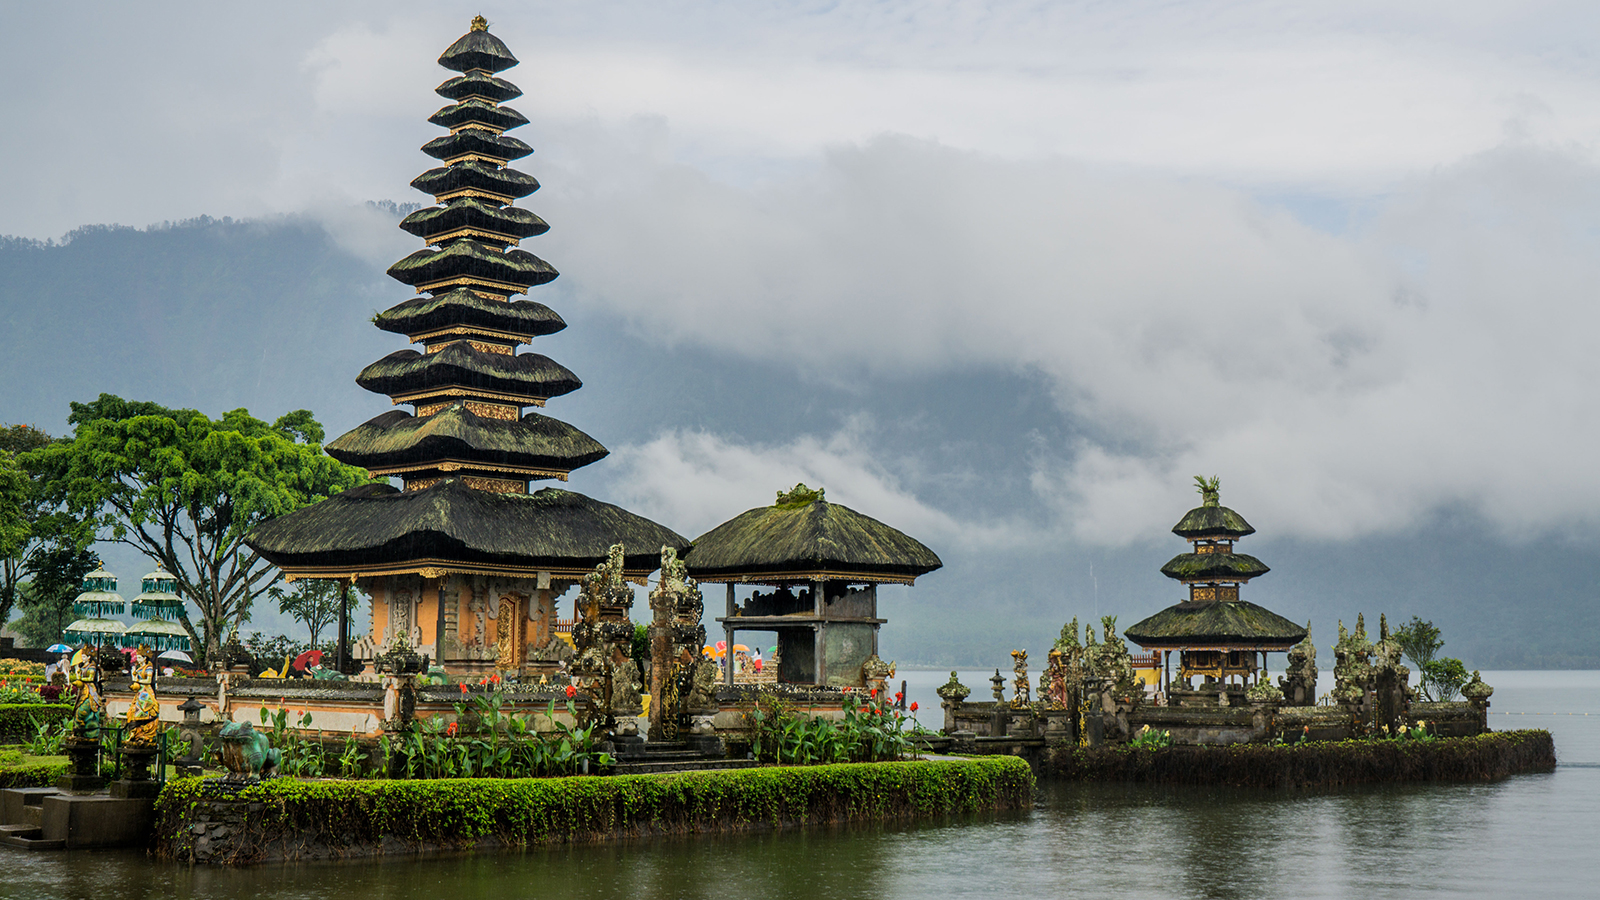 Bali siap terima wisatawan mancanegara